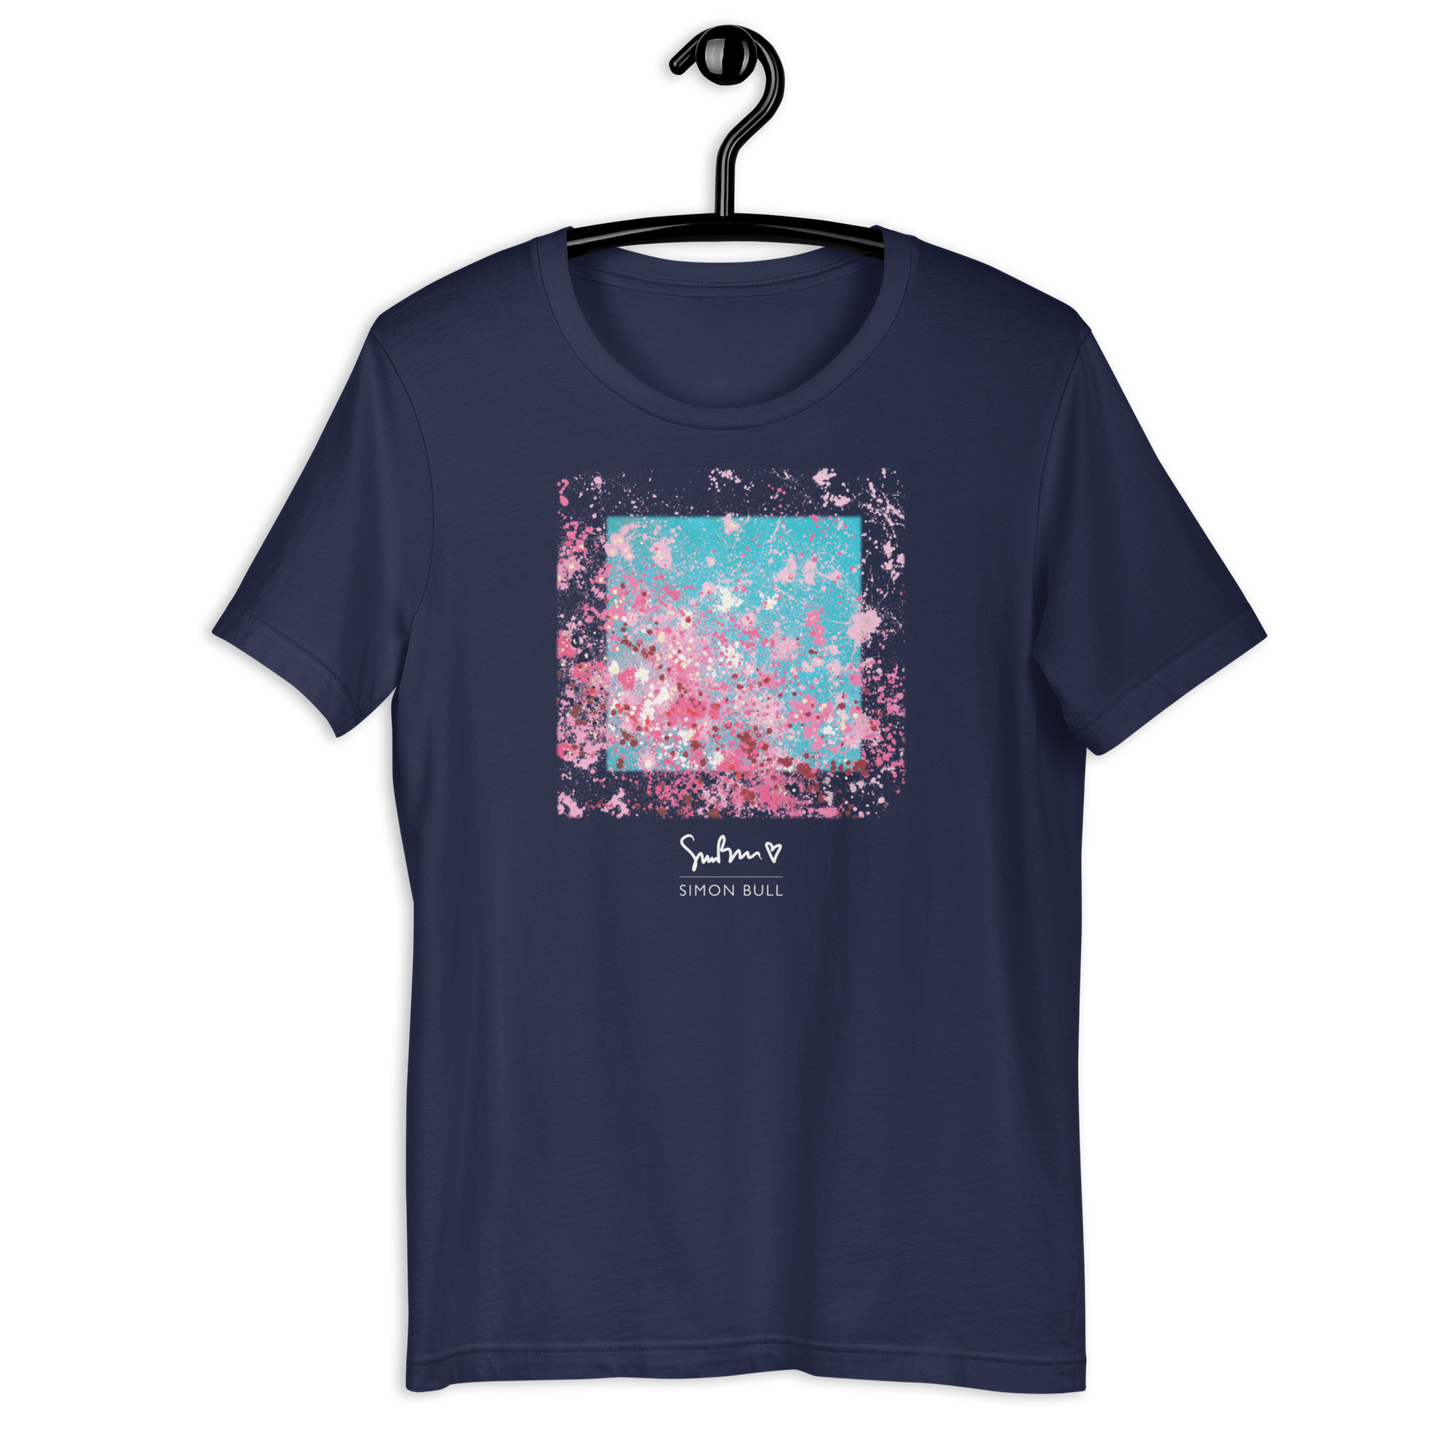 Satoko - T-shirt